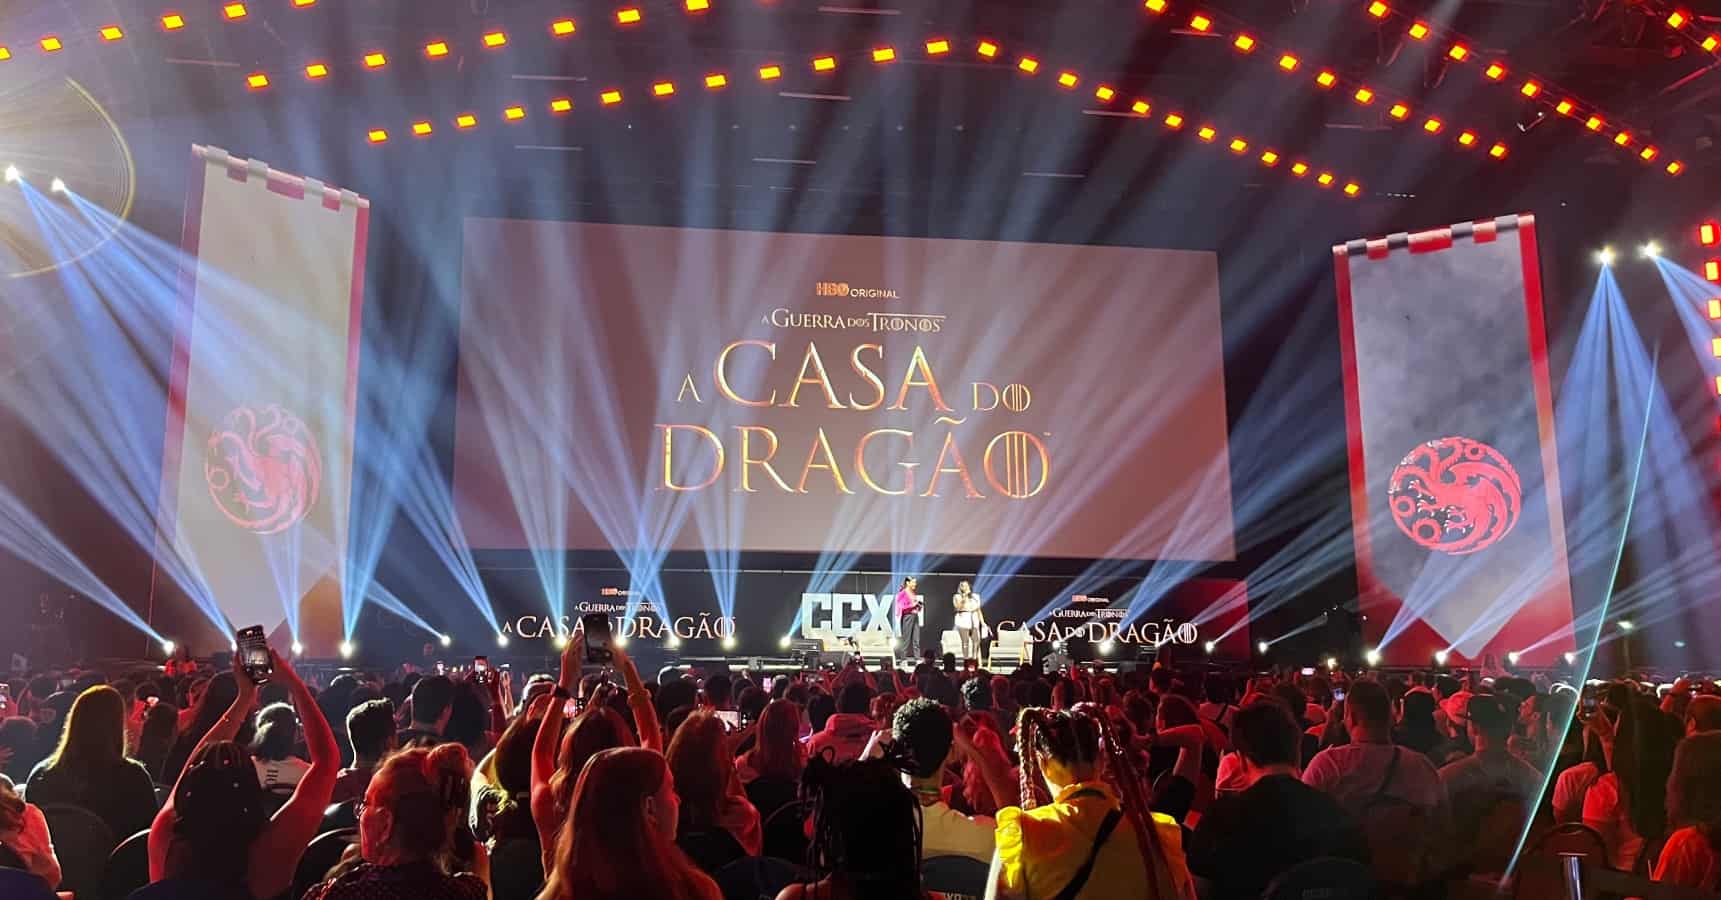 QUASE 1 ANO DE FILMAGENS! A - House Of The Dragon Brasil